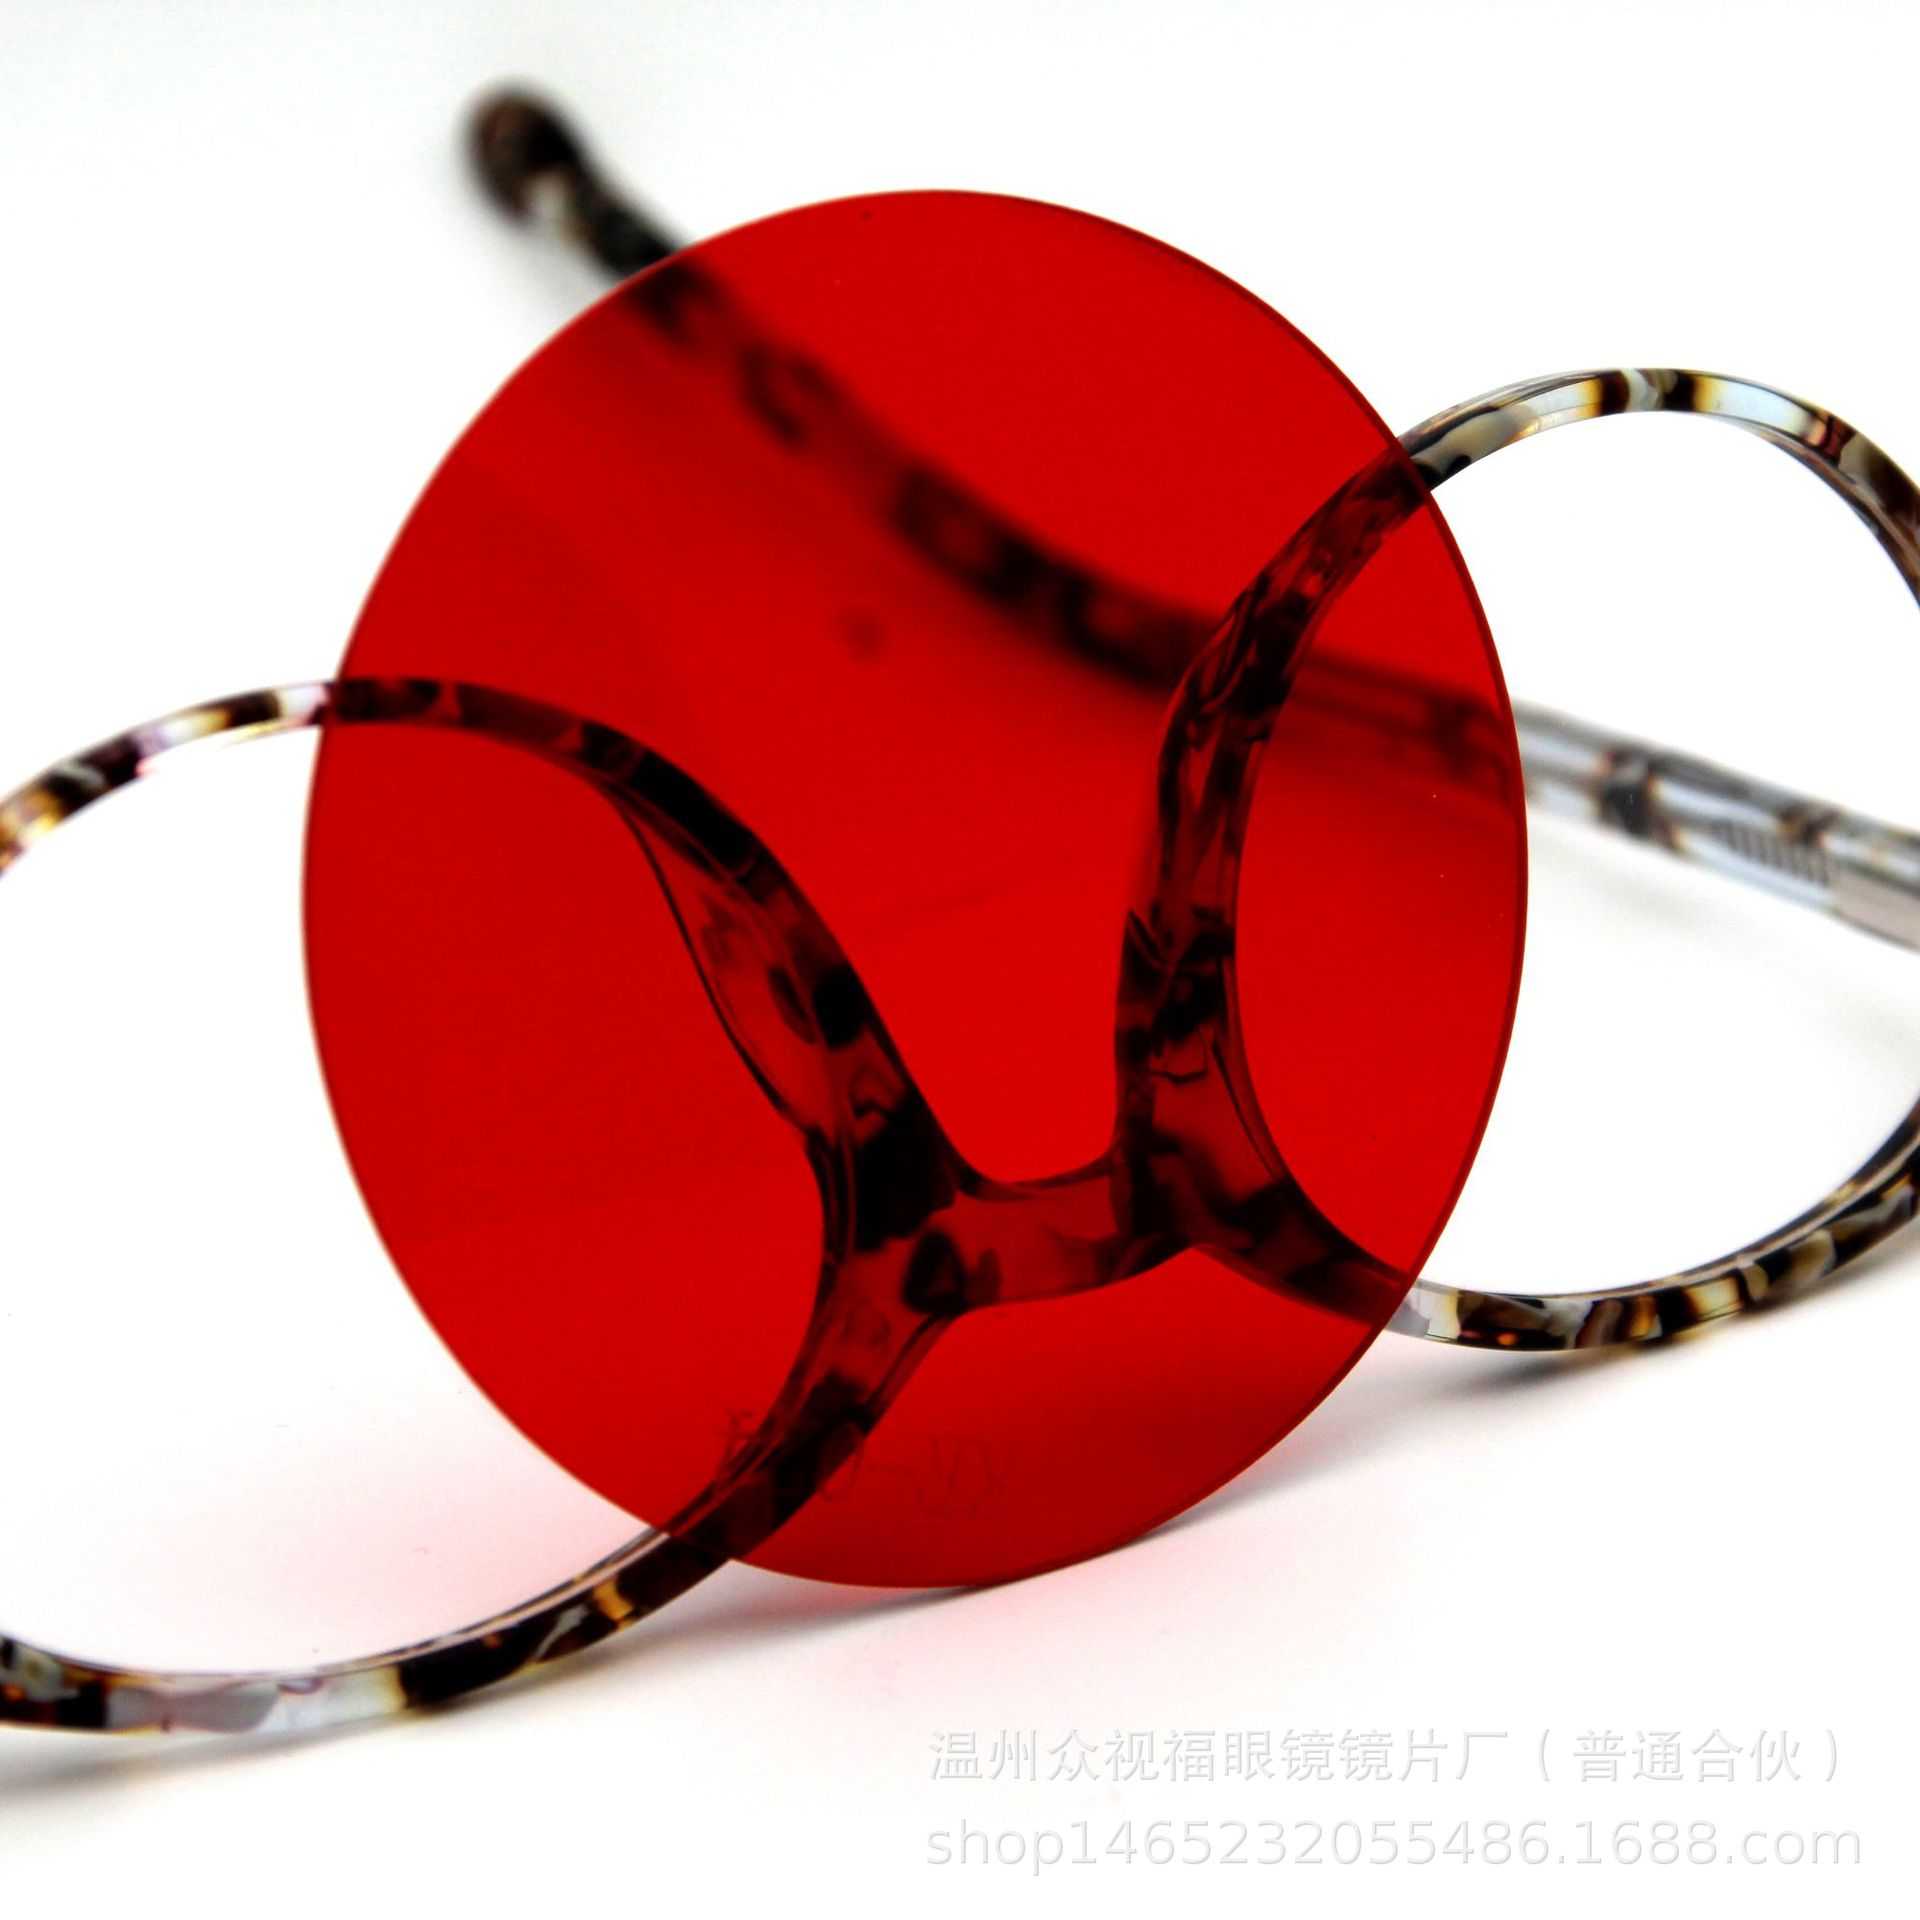 厂家直销 AC/PC单色太阳镜眼镜片 直径65mm可定制防蓝光电脑片示例图9